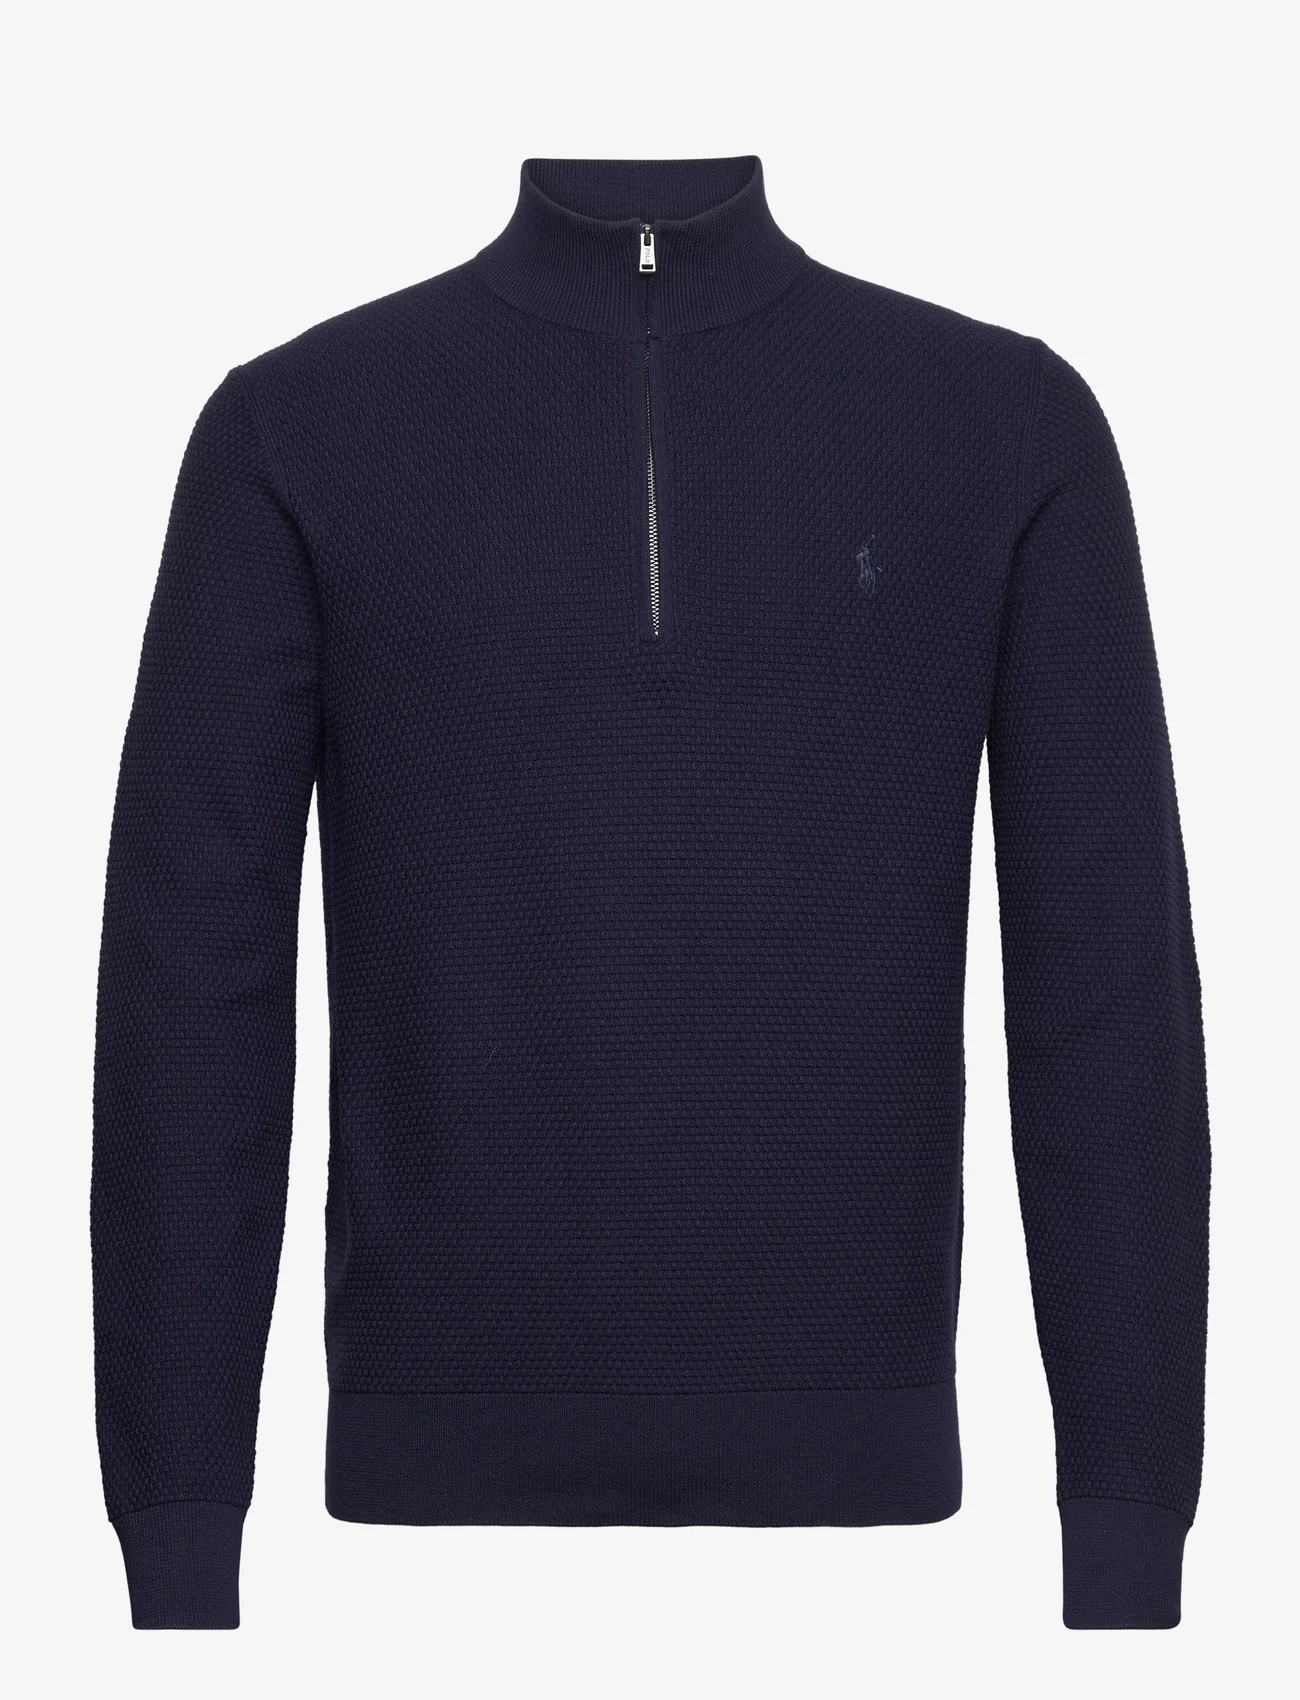 Ralph Lauren Golf - Performance Quarter-Zip Sweater - džemperiai - refined_navy/c795 - 0